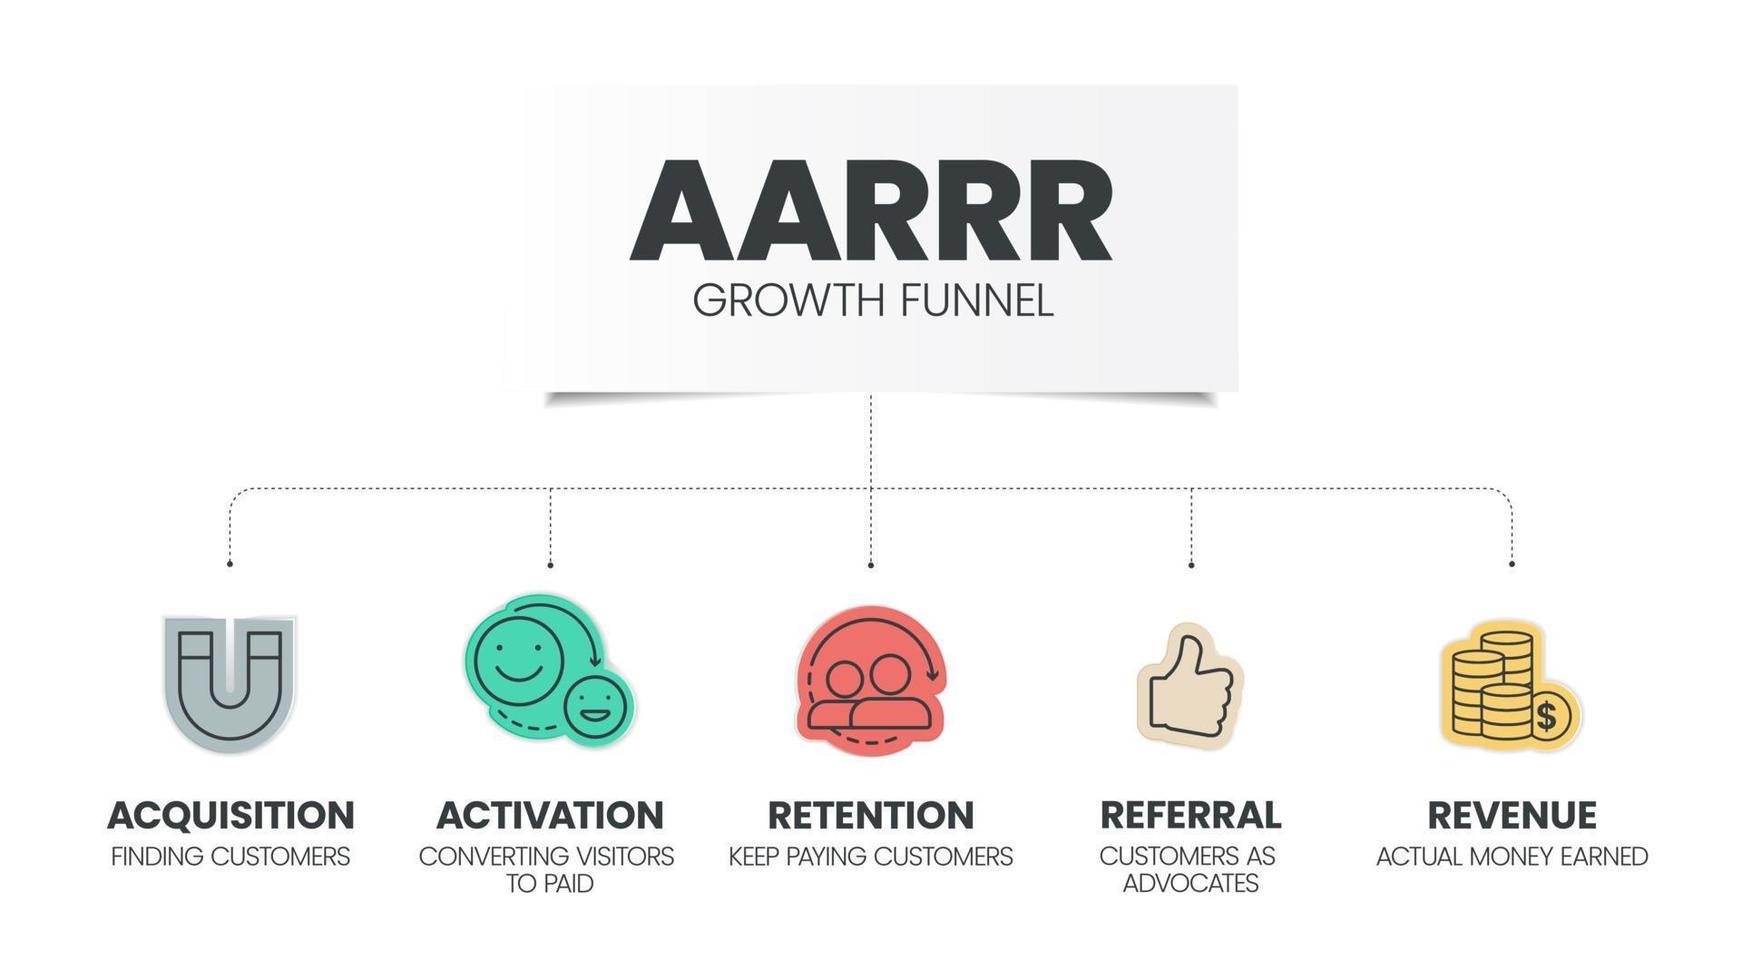 aarr crescita imbuto modello Infografica modello con icone ha 5 passaggi come come acquisizione, Attivazione, ritenzione, rinvio e reddito. pirata metrix o pirata struttura per misurare crescita e successo vettore